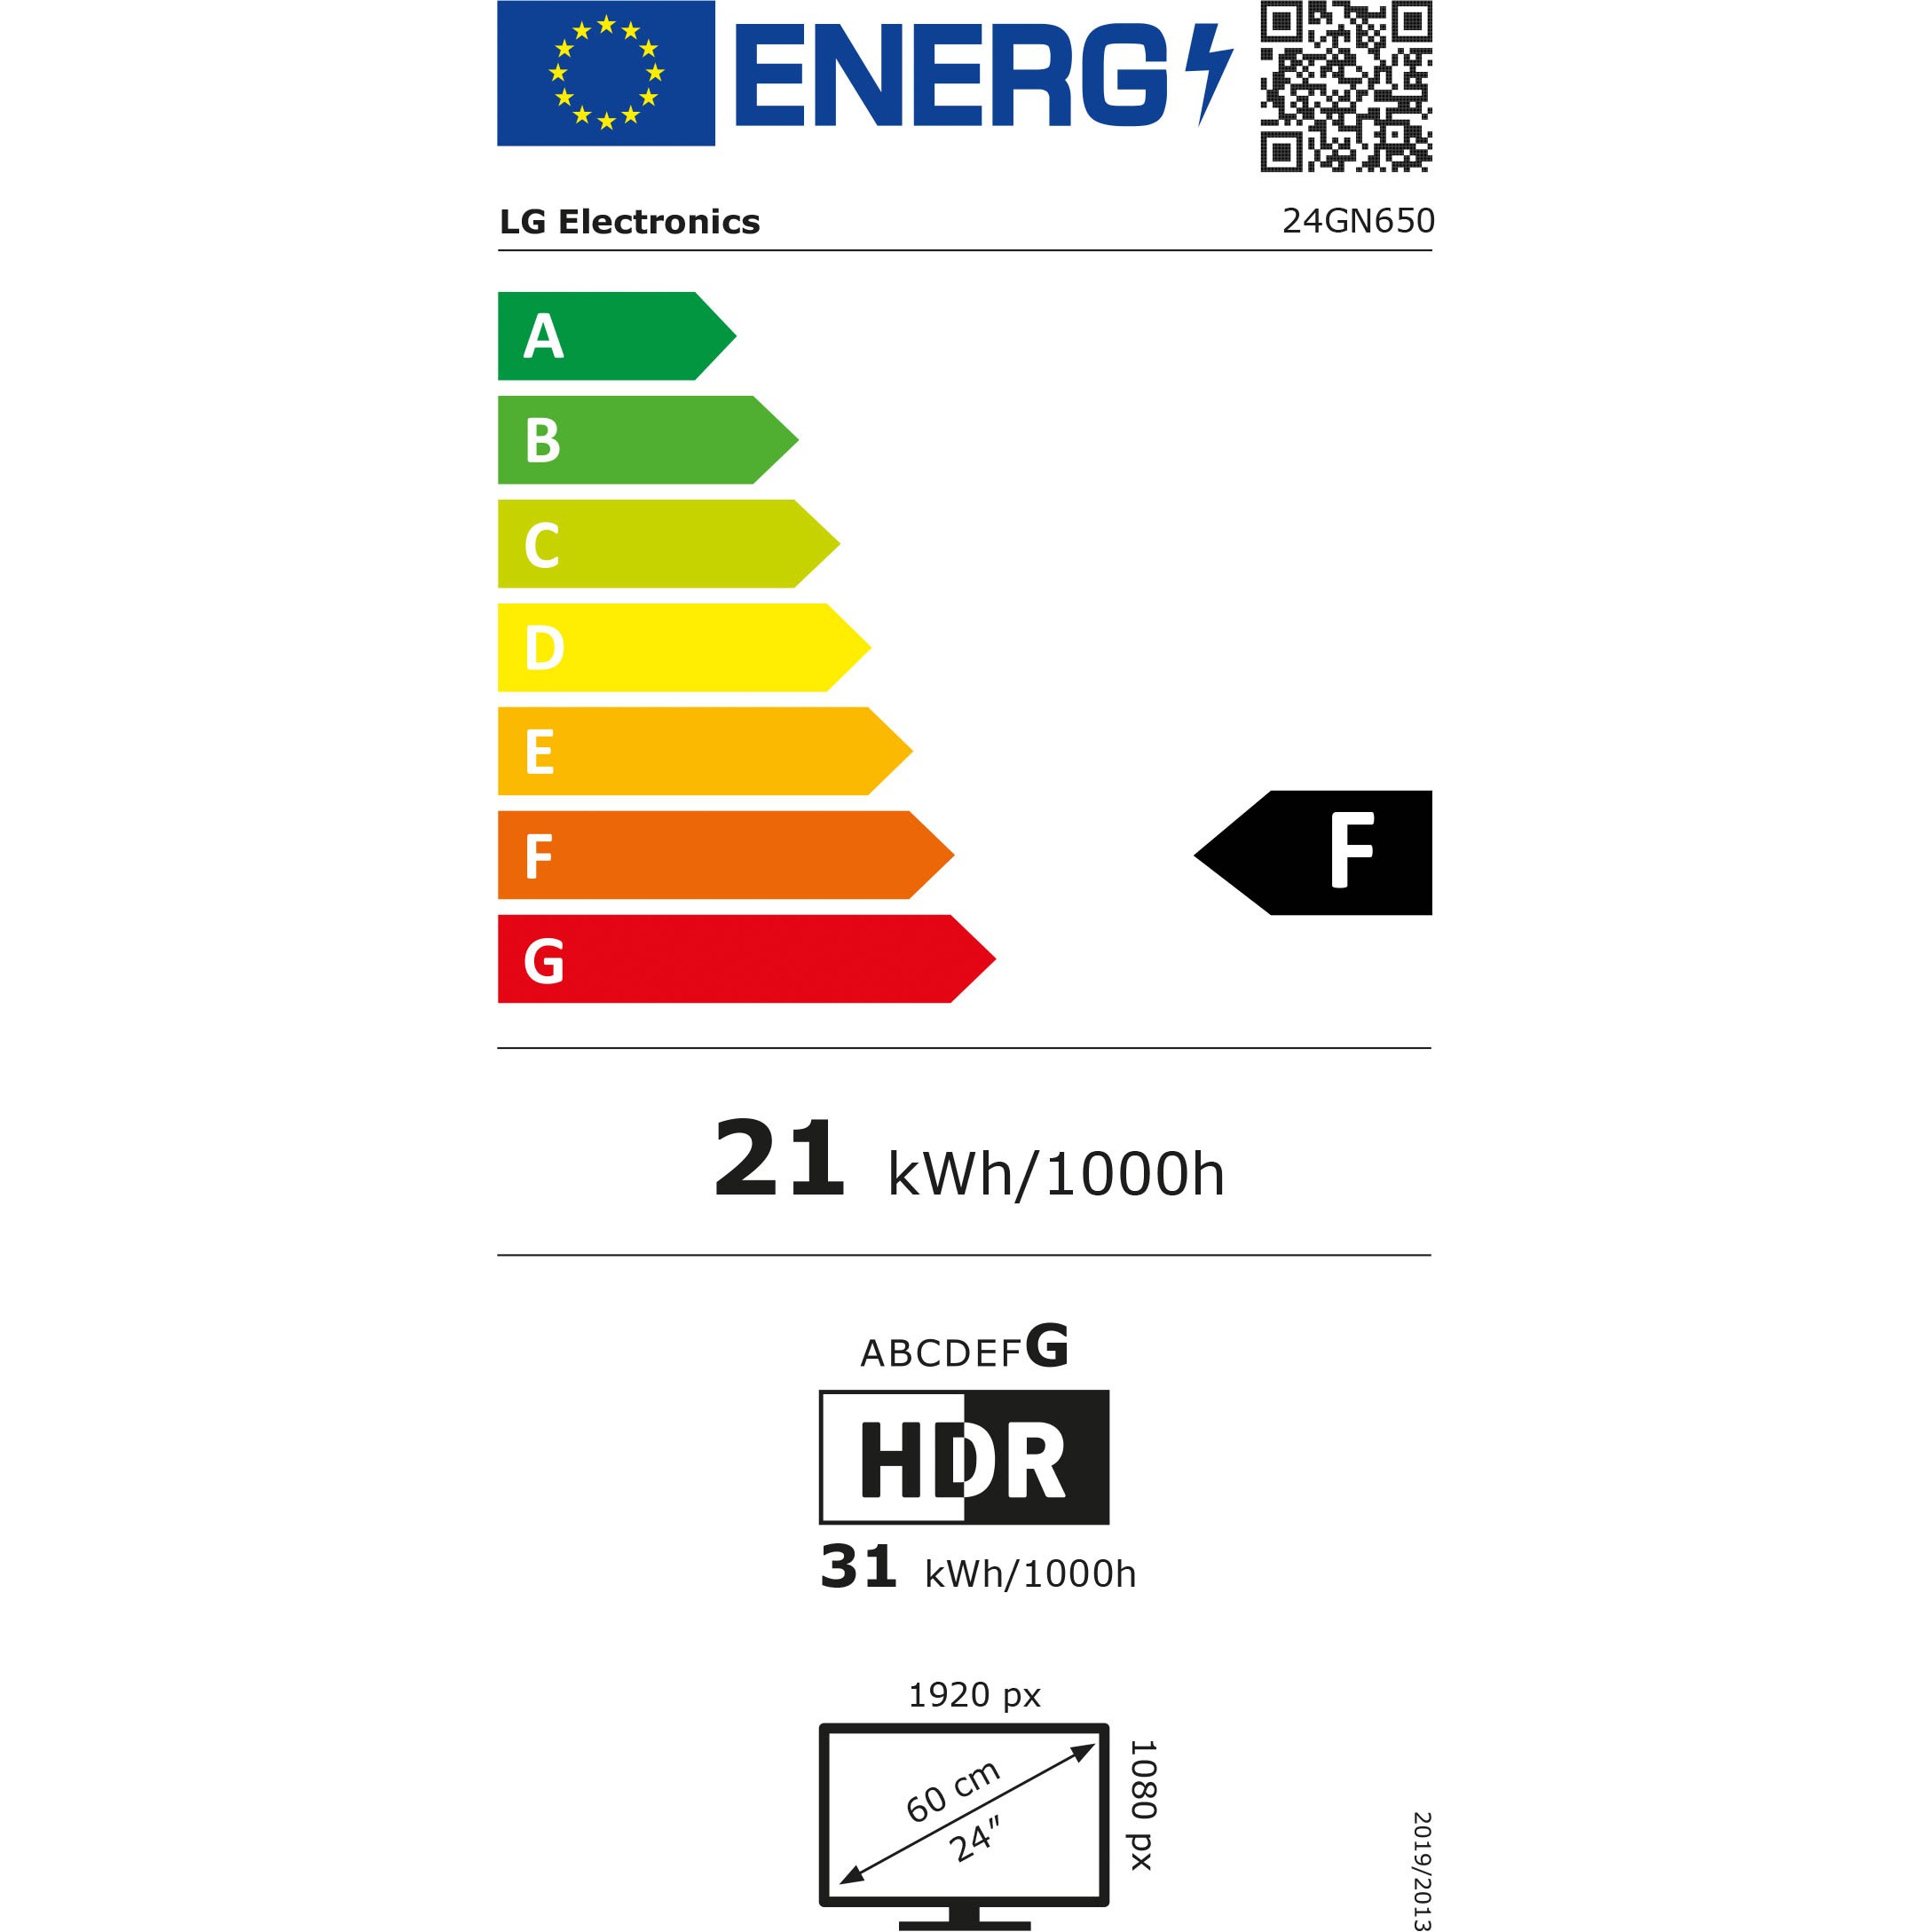 Grafik mit der Übersicht der Energieeffizienz des Produktes.